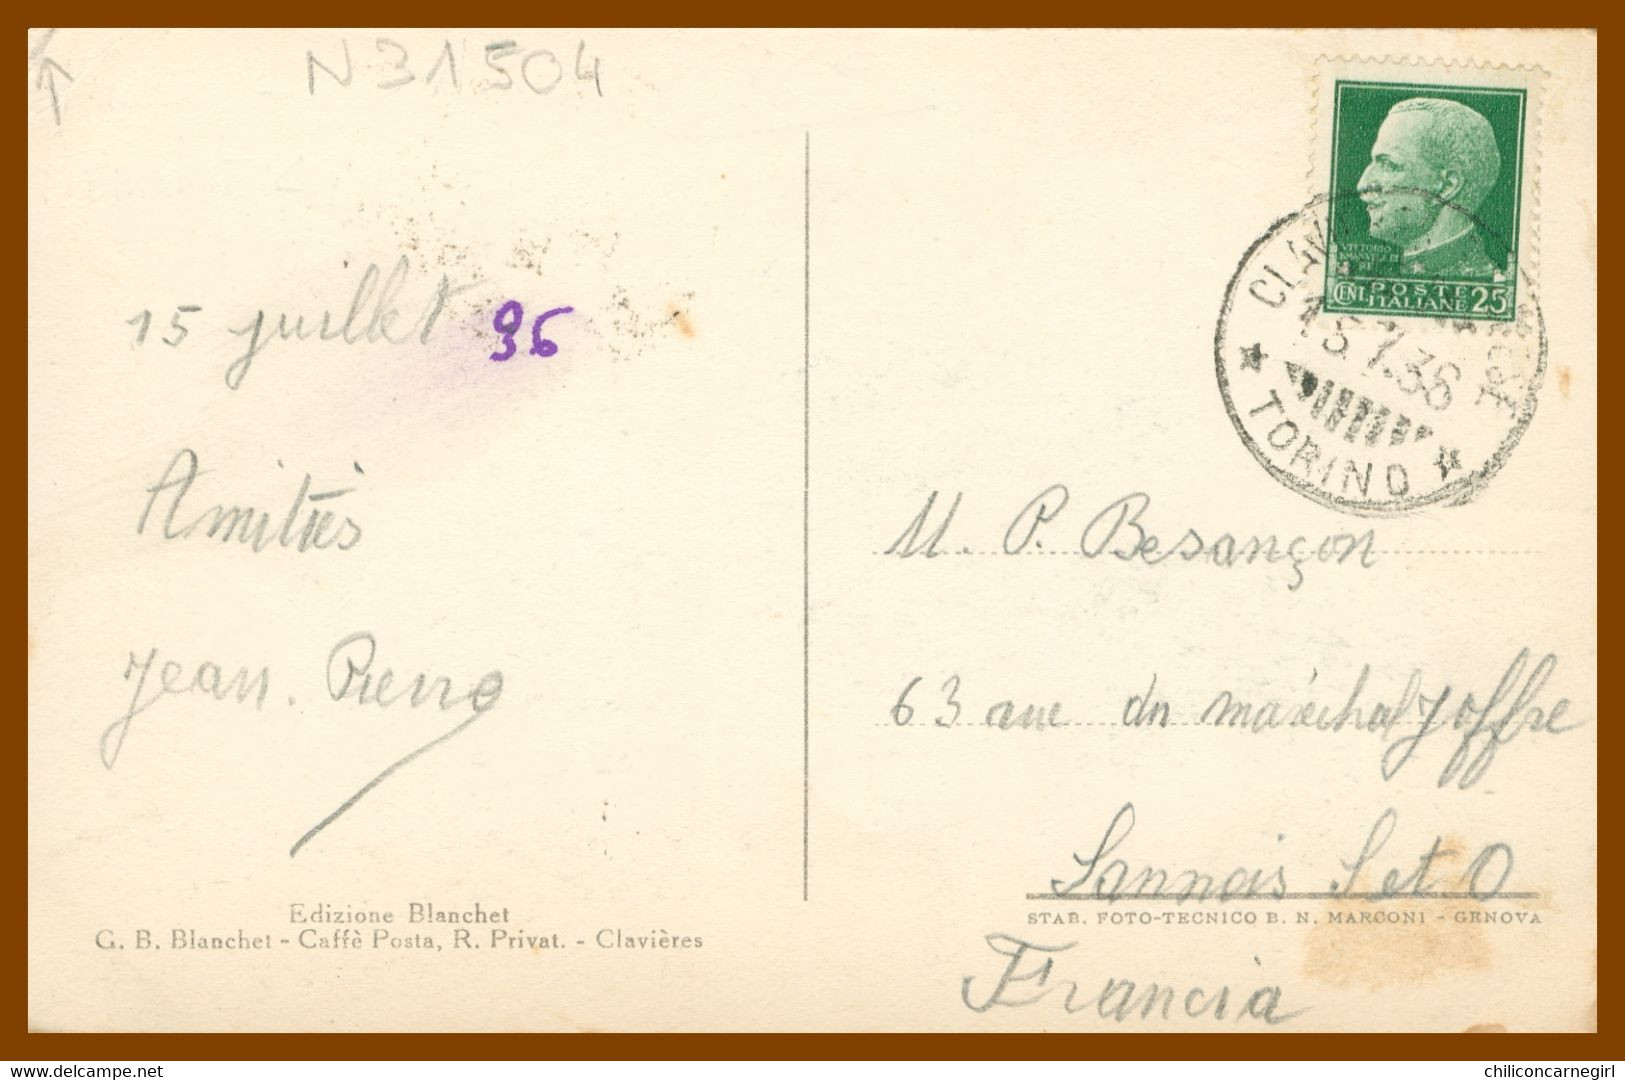 CLAVIERES - Albergo Savoia - Edit. BLANCHET Caffé Posta R. Privat. - Foto MARCONI - 1936 - Wirtschaften, Hotels & Restaurants